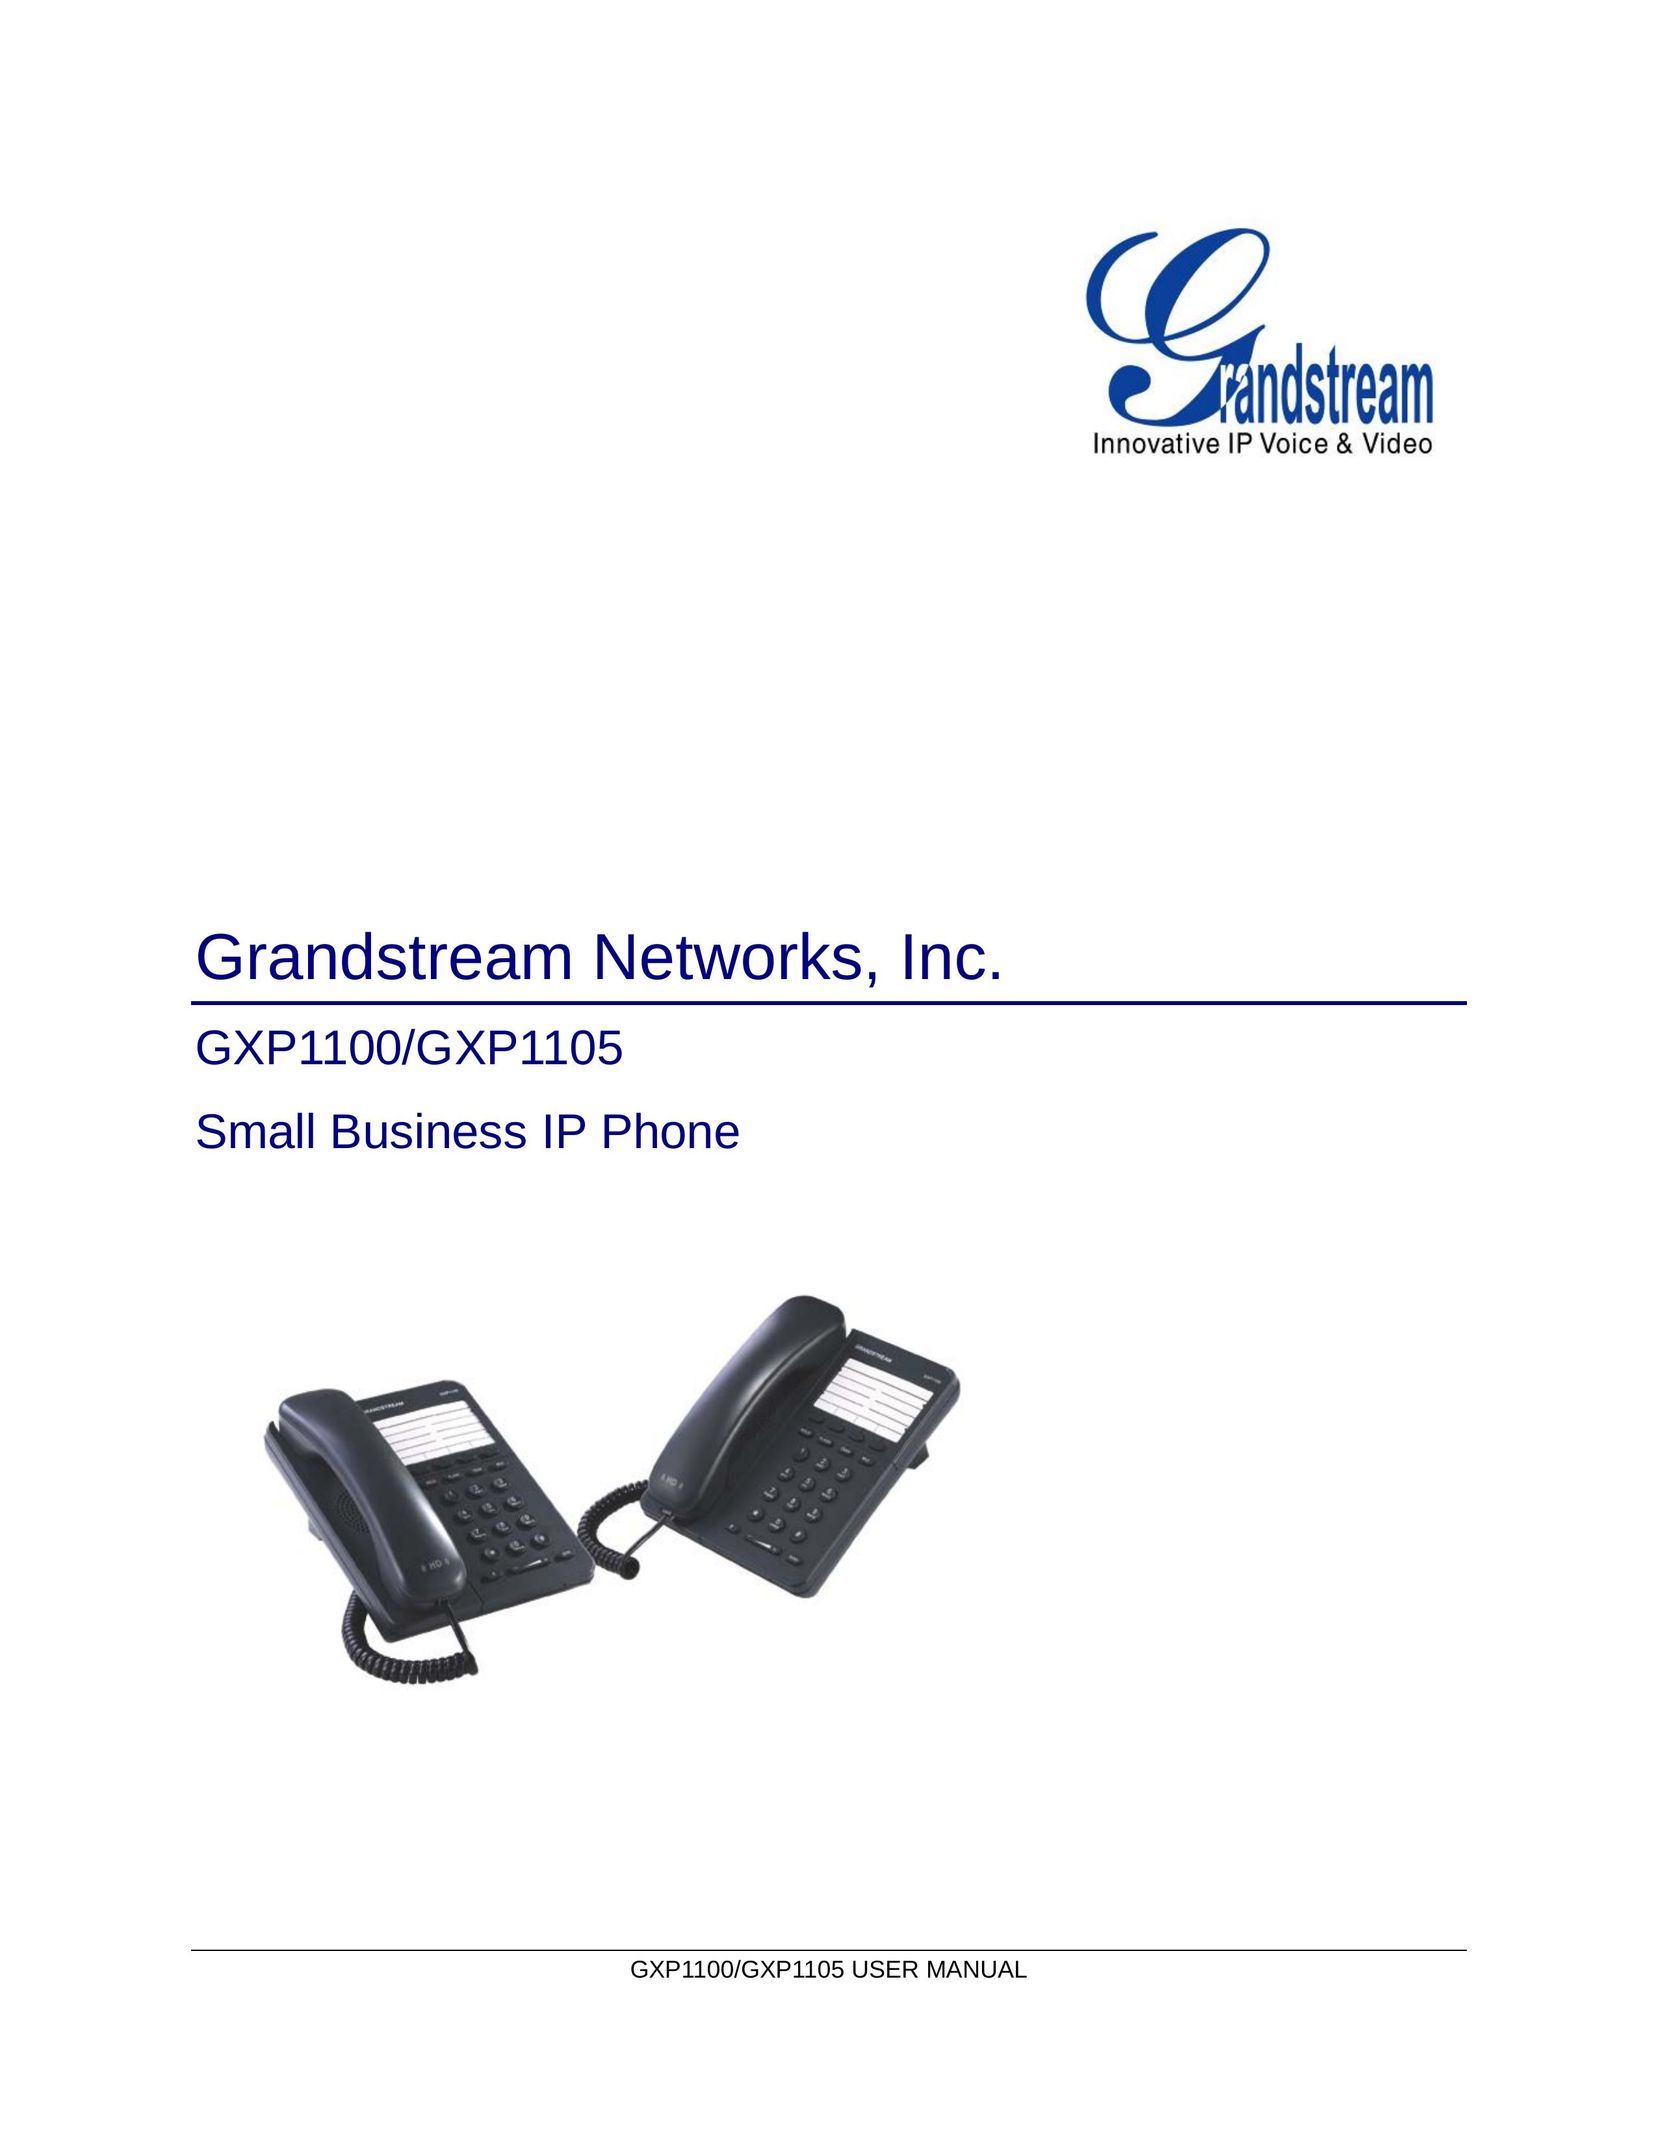 Grandstream Networks GXP1105 IP Phone User Manual